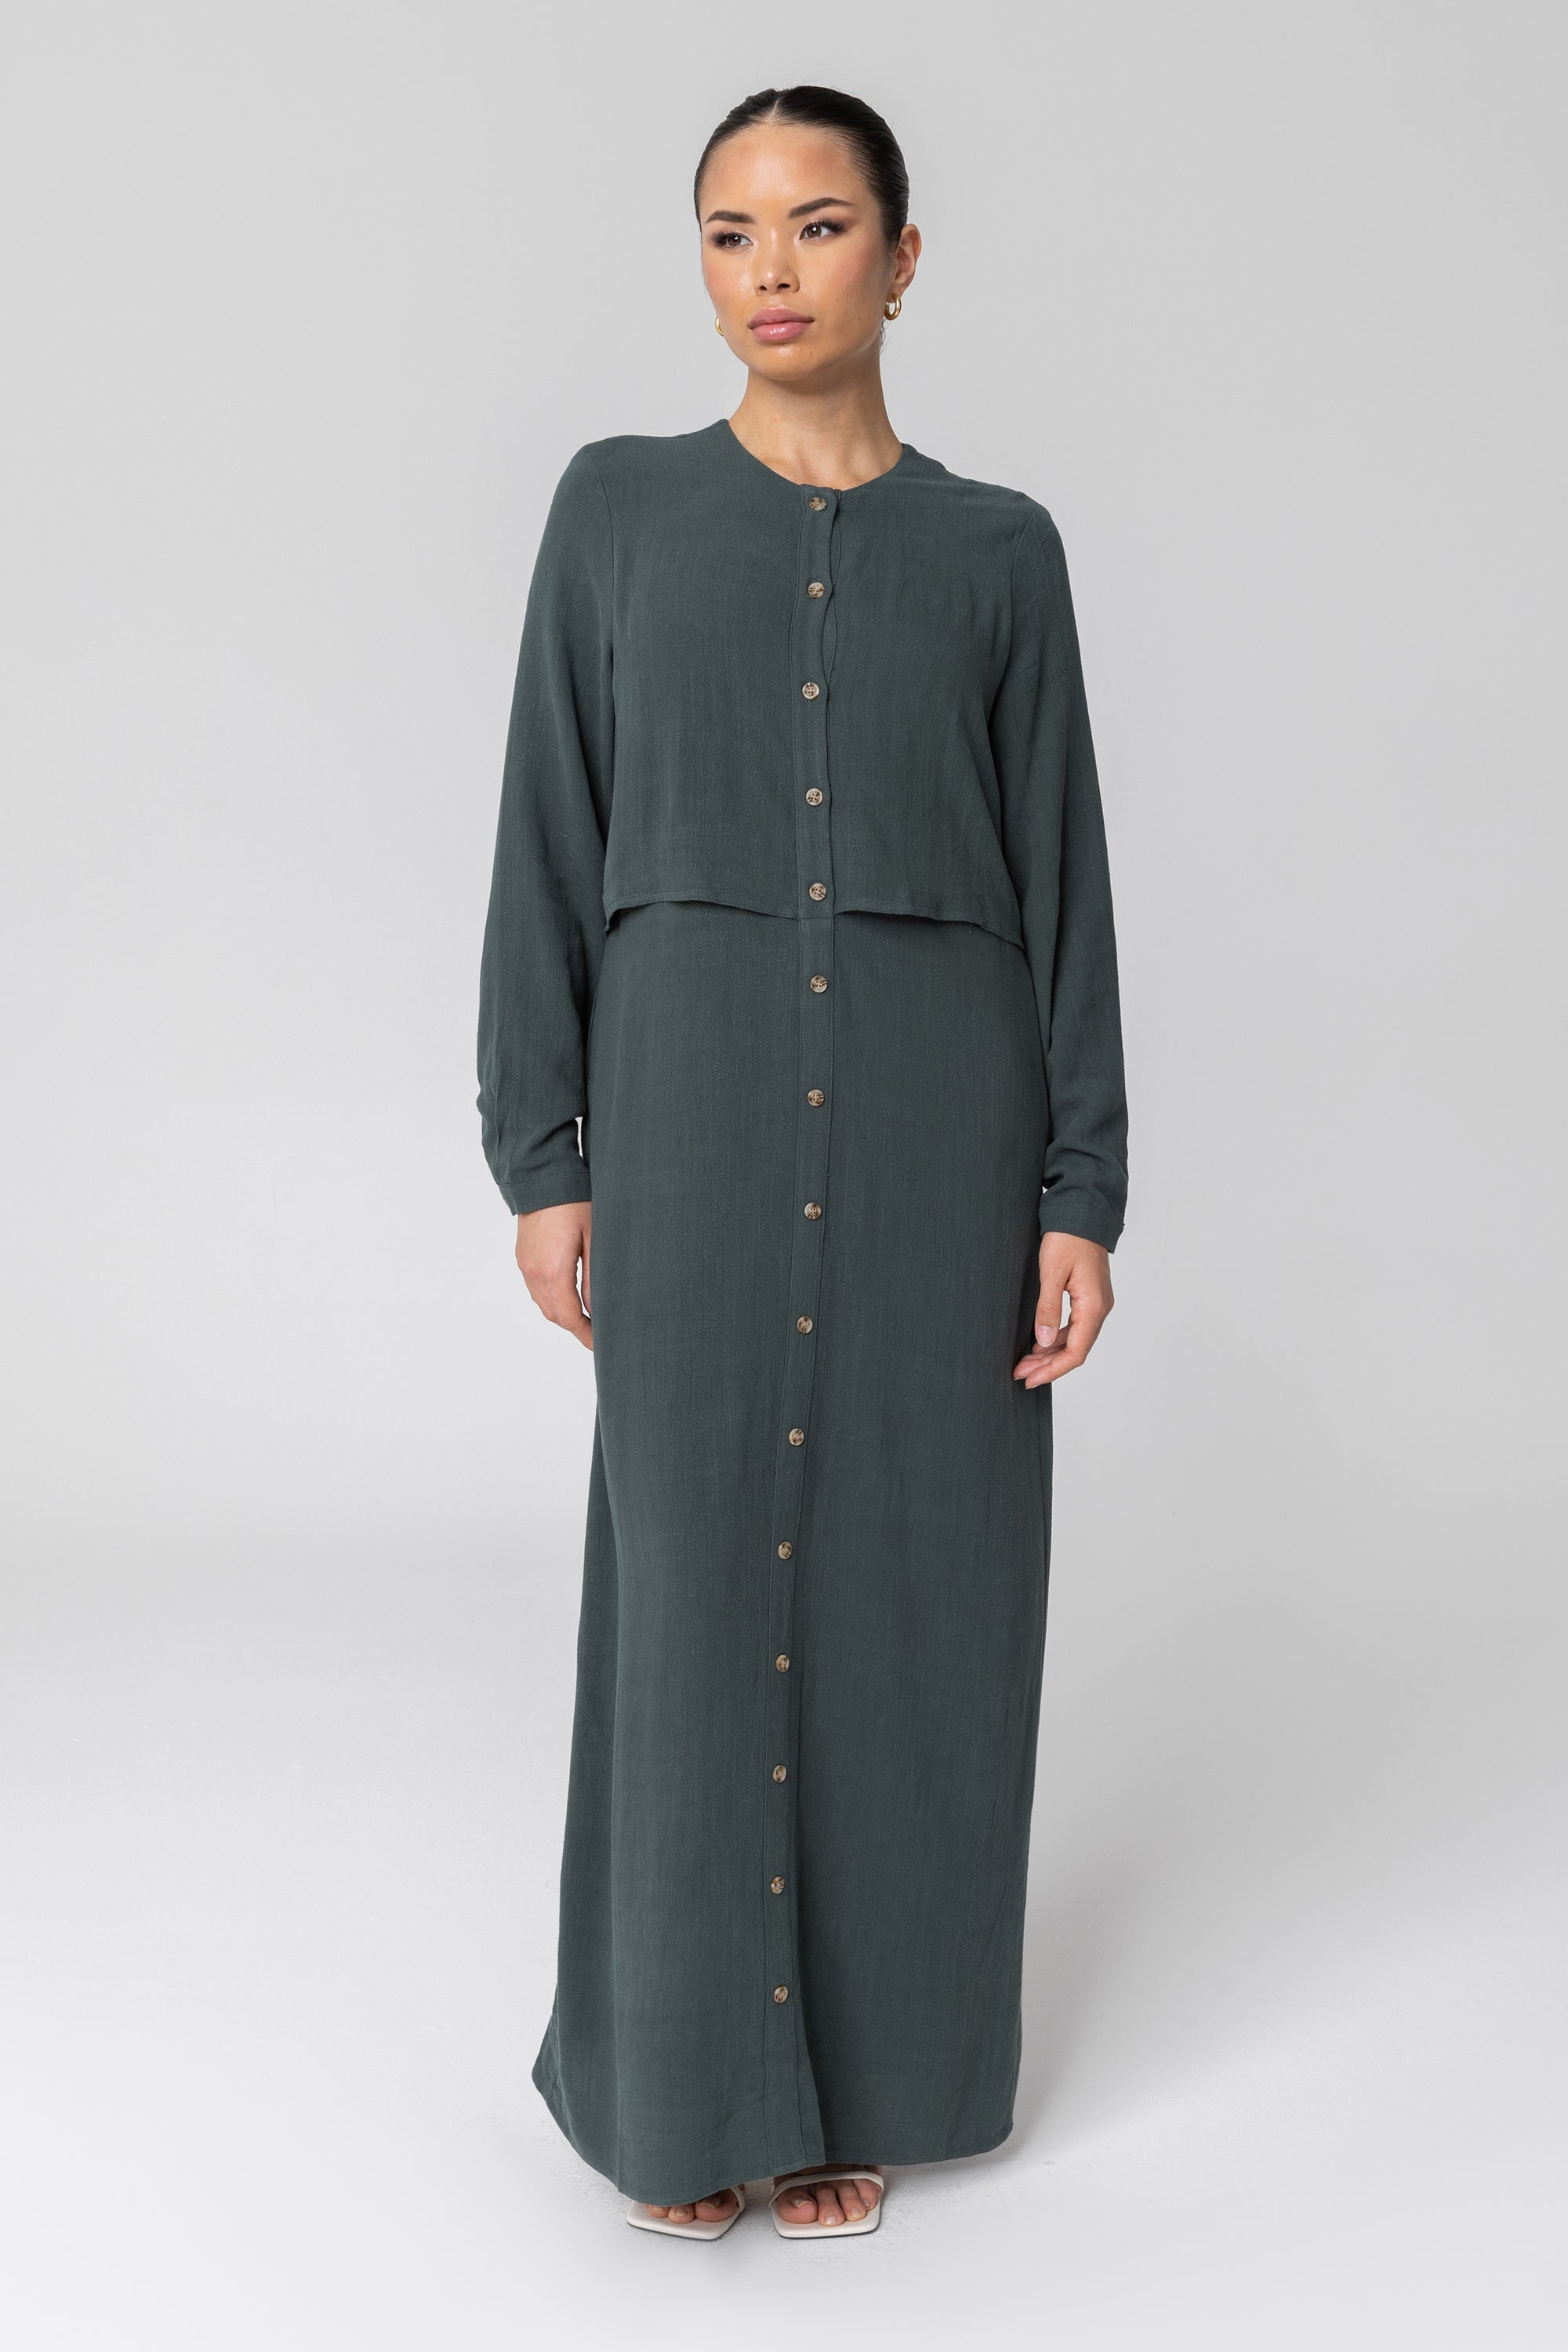 Sabah Cotton Linen Overlay Maxi Shirt Dress - Teal